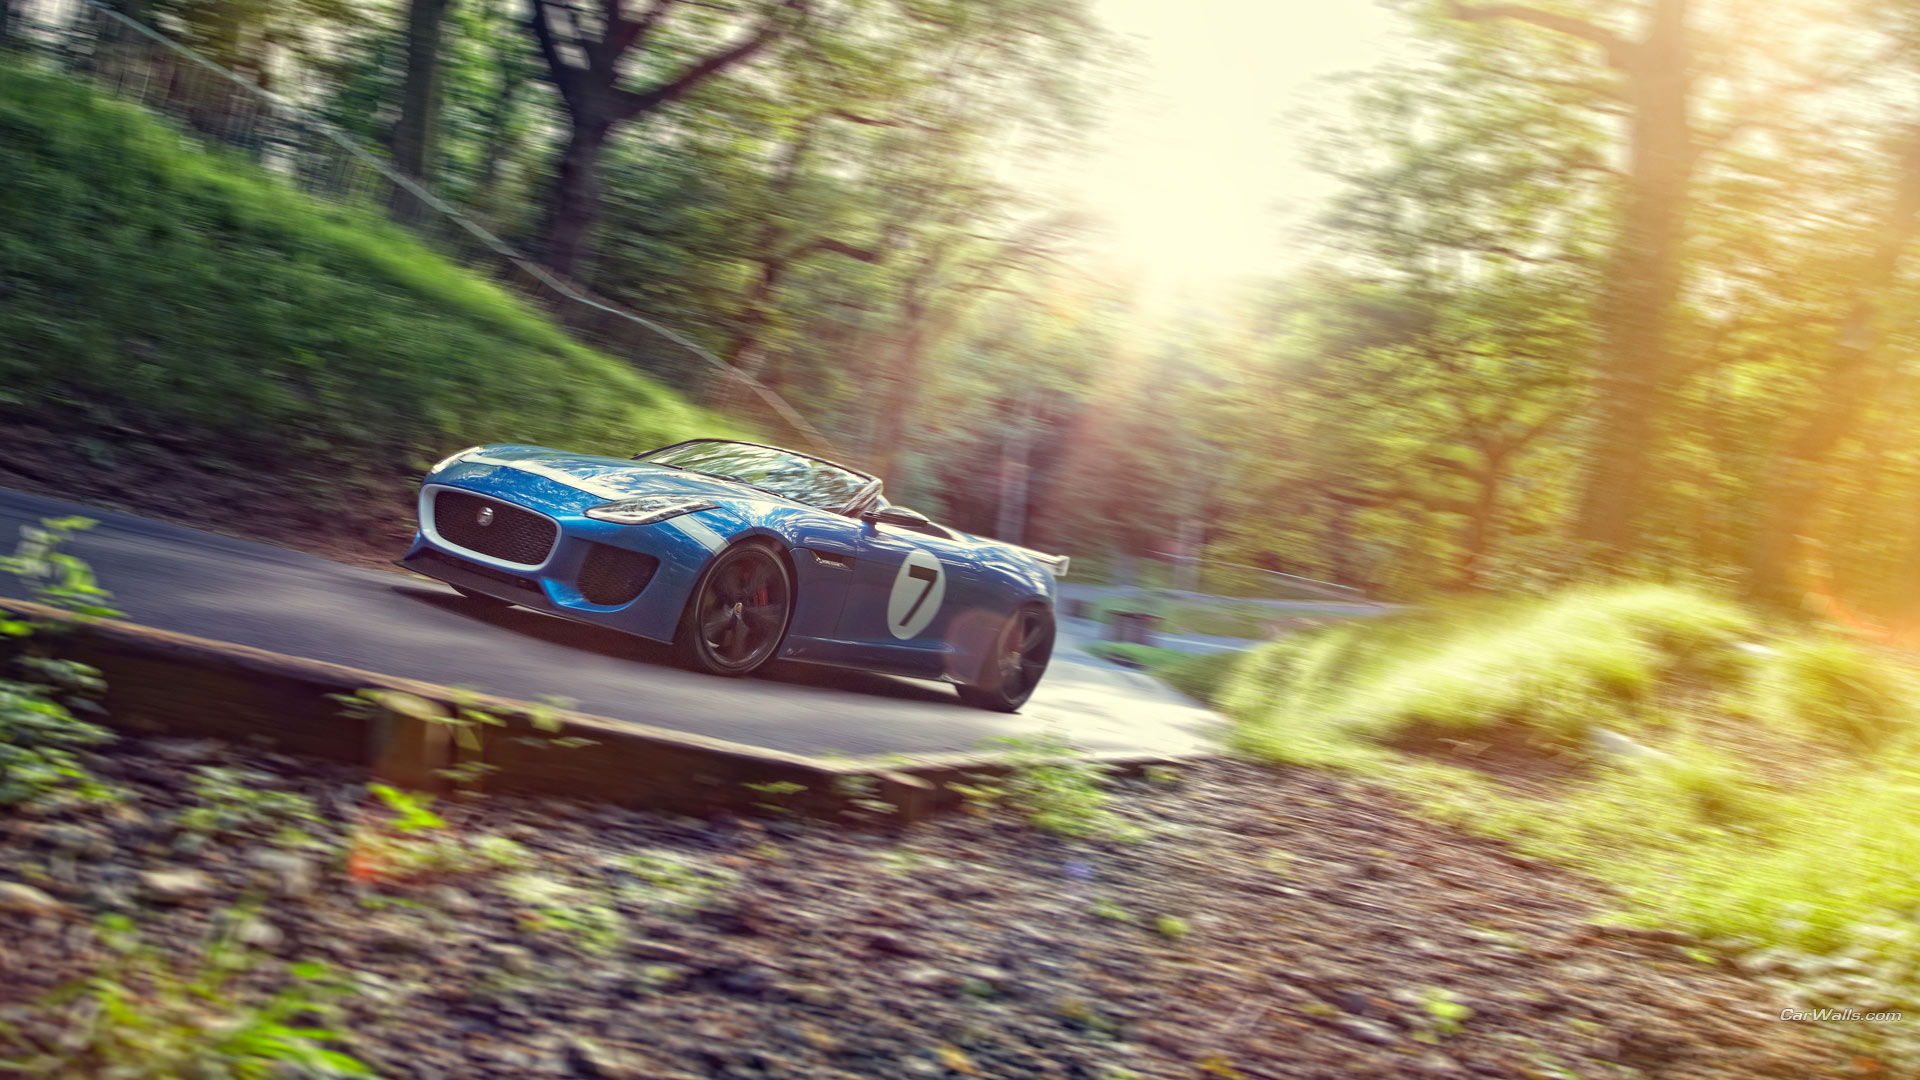 Vehicles 2013 Jaguar Project 7 Concept HD Wallpaper | Background Image